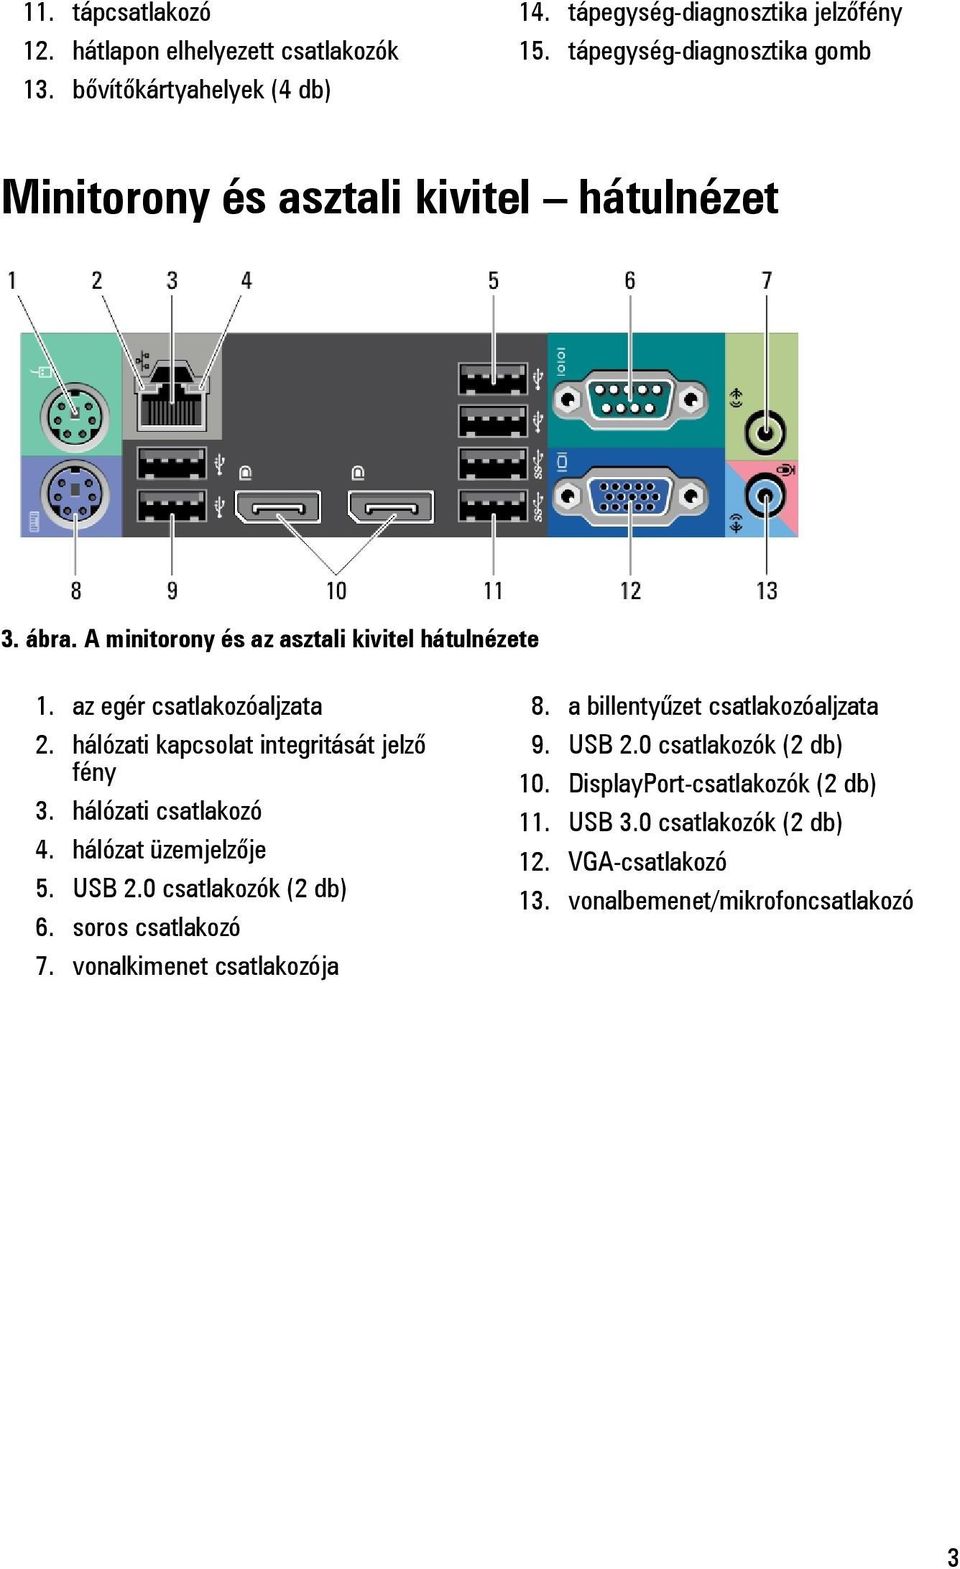 hálózati kapcsolat integritását jelző fény 3. hálózati csatlakozó 4. hálózat üzemjelzője 5. USB 2.0 csatlakozók (2 db) 6. soros csatlakozó 7.